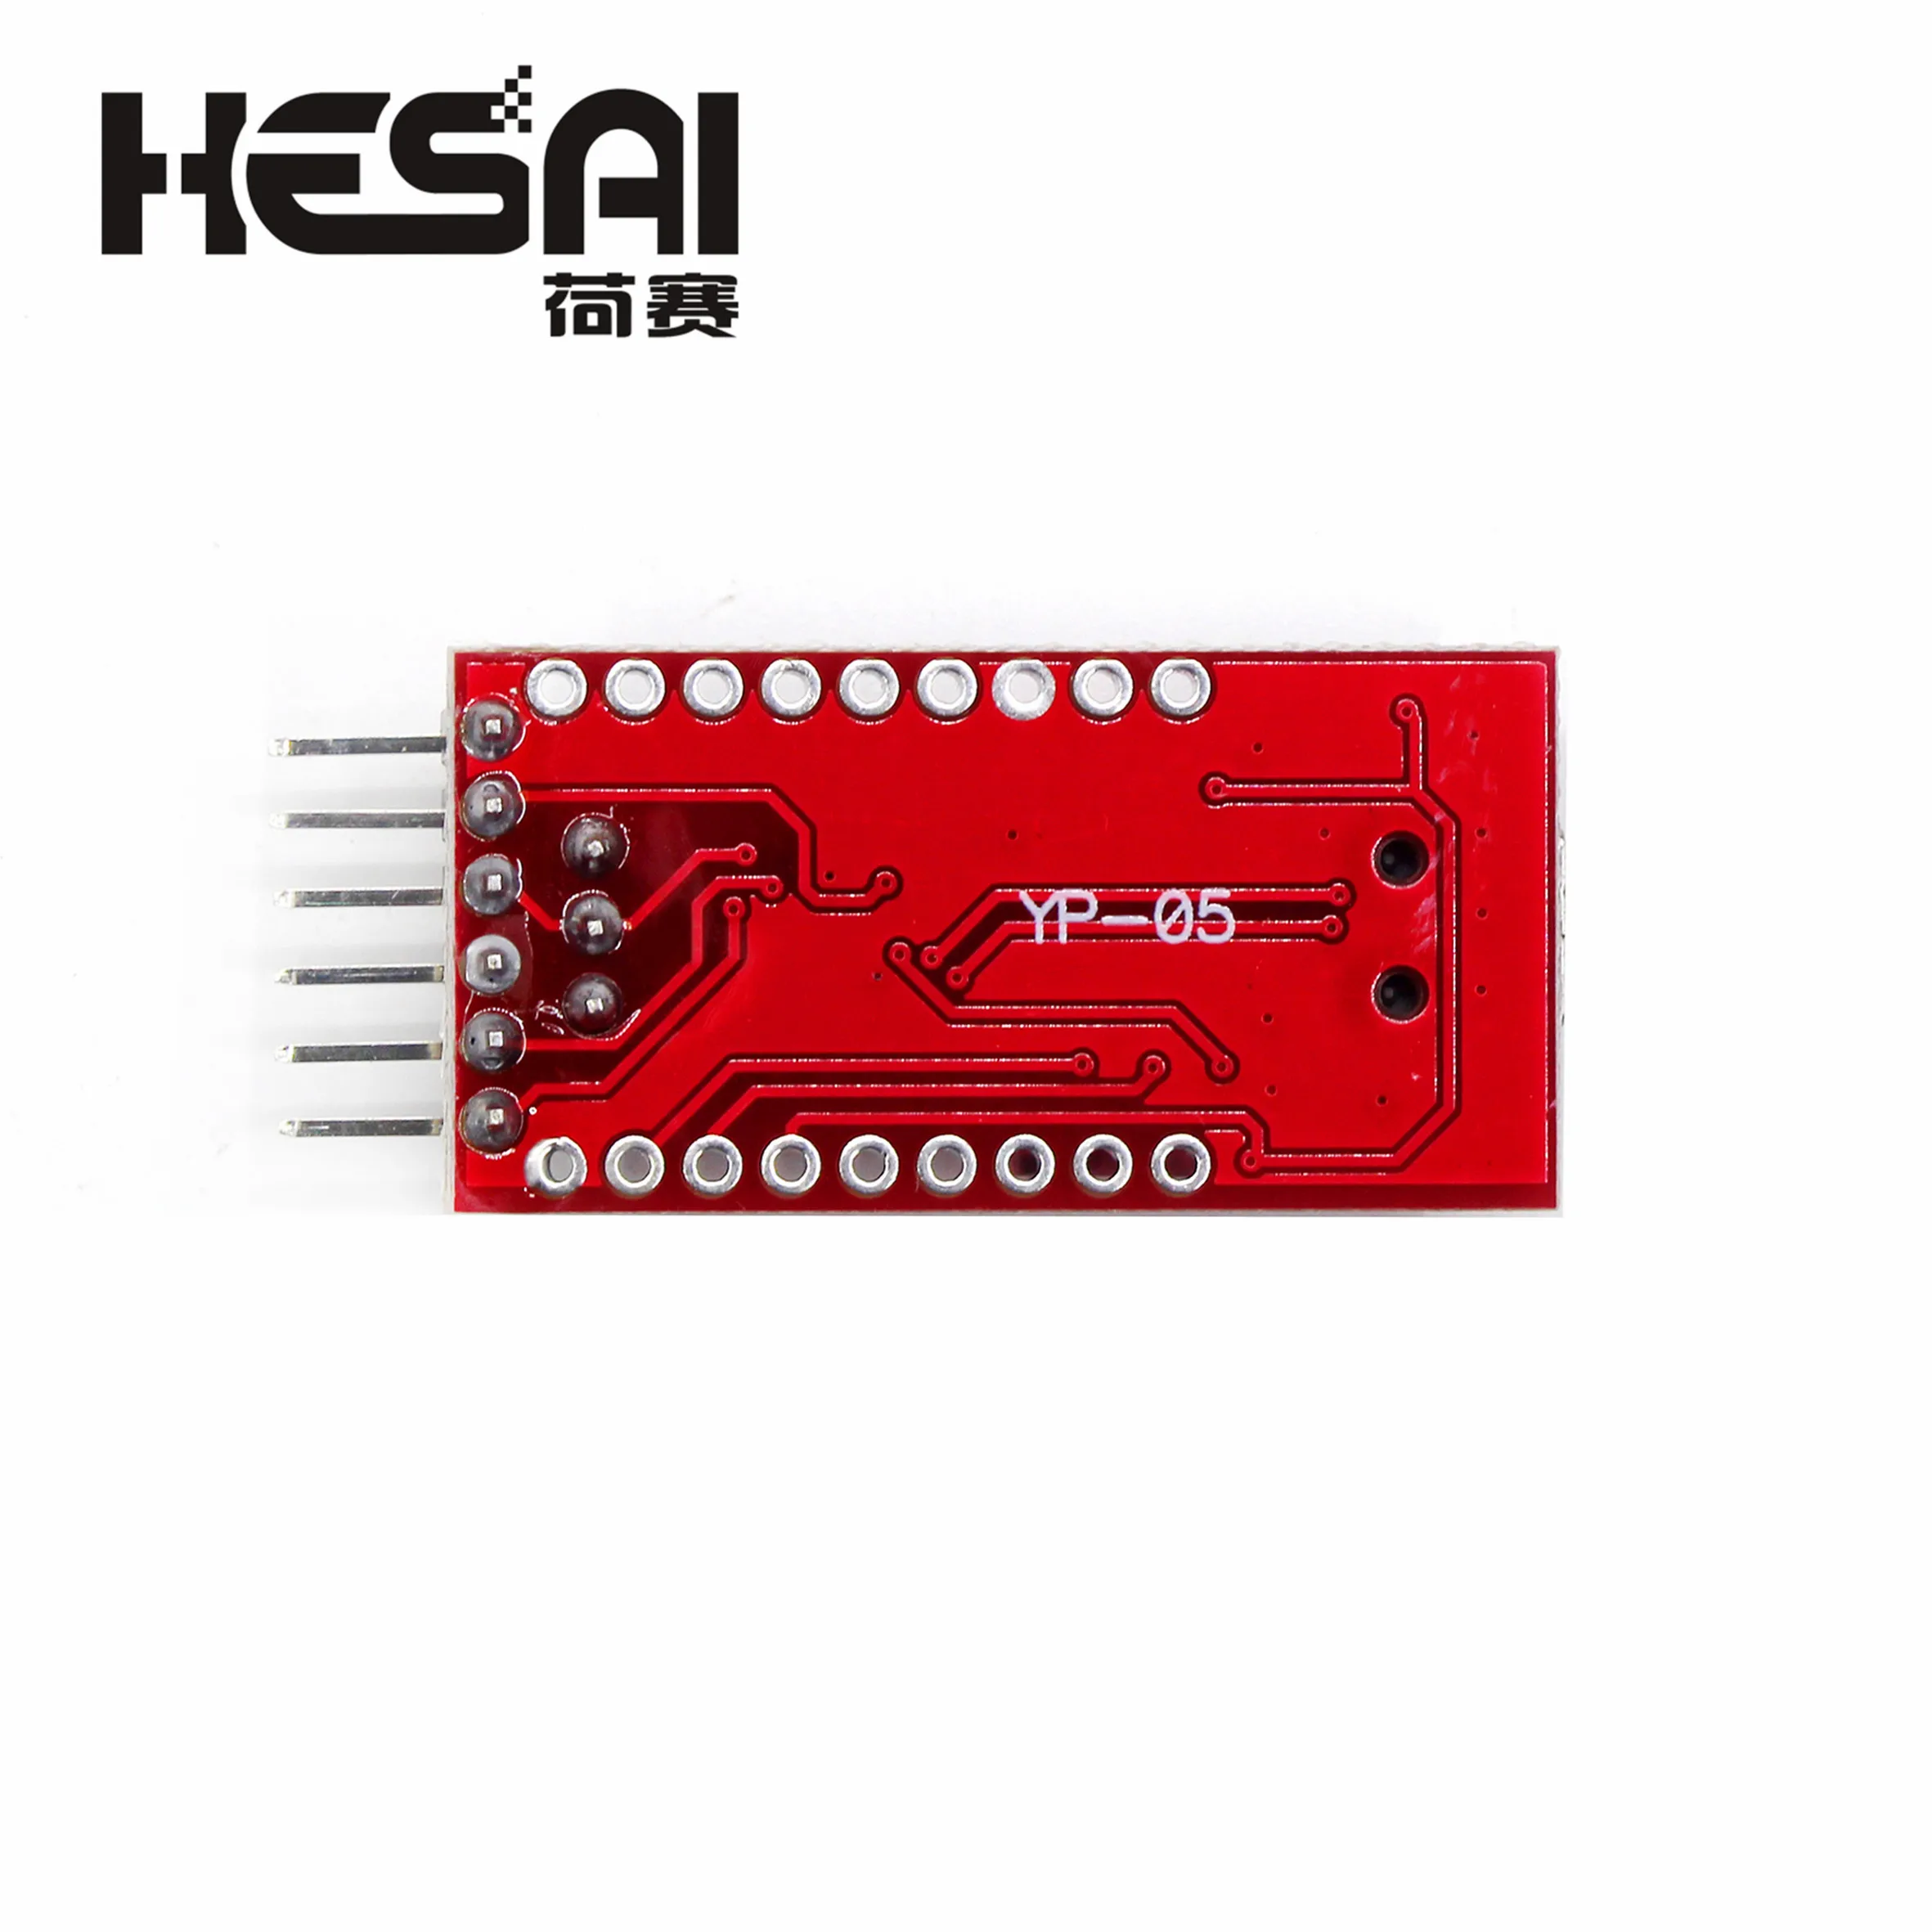 FT232RL FTDI Serials Adapter Module Mini Port Arduino USB to TTL 3.3V 5.5 HI